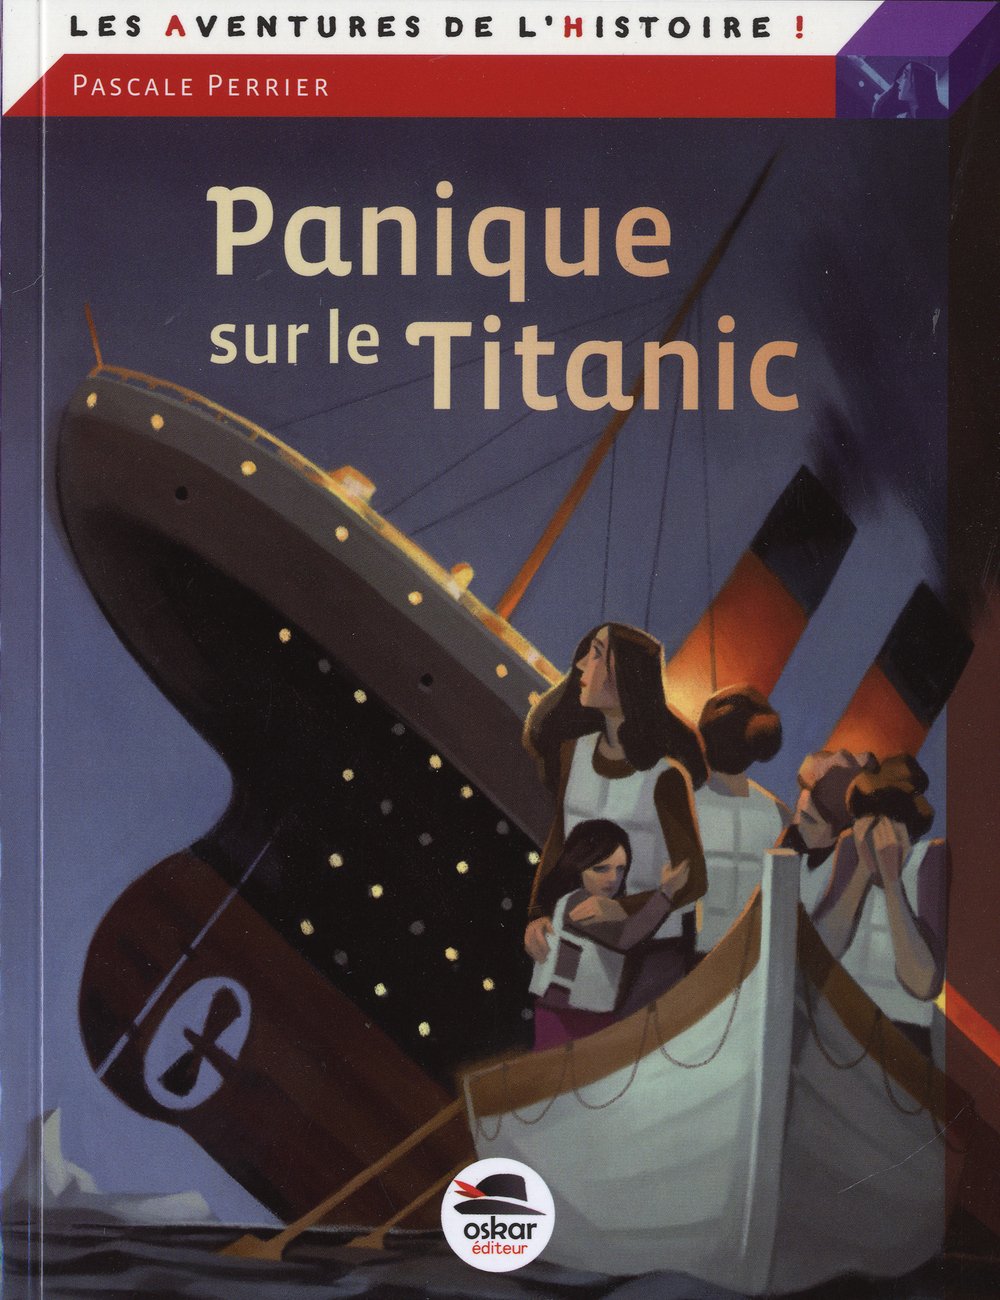 Panique sur le Titanic [Pascale Perrier] 71h2yf10